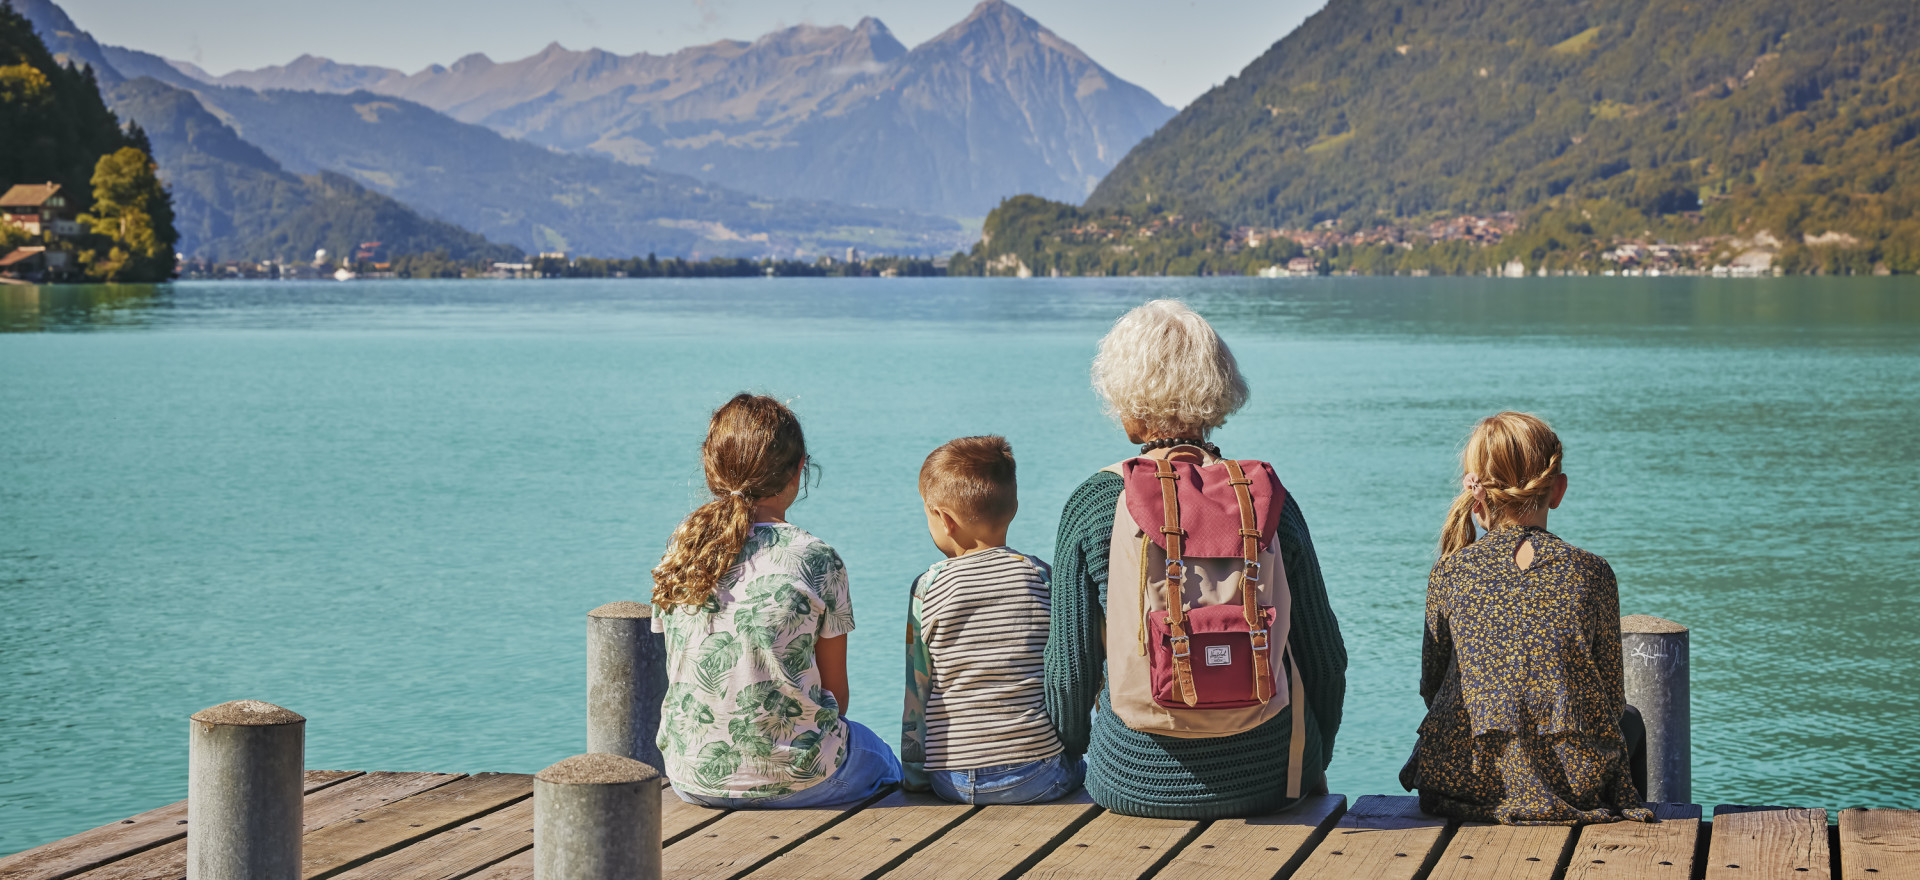 Grossmutter mit Grosskindern auf dem Steg in Iseltwald mit Blick auf Brienzersee und Berge